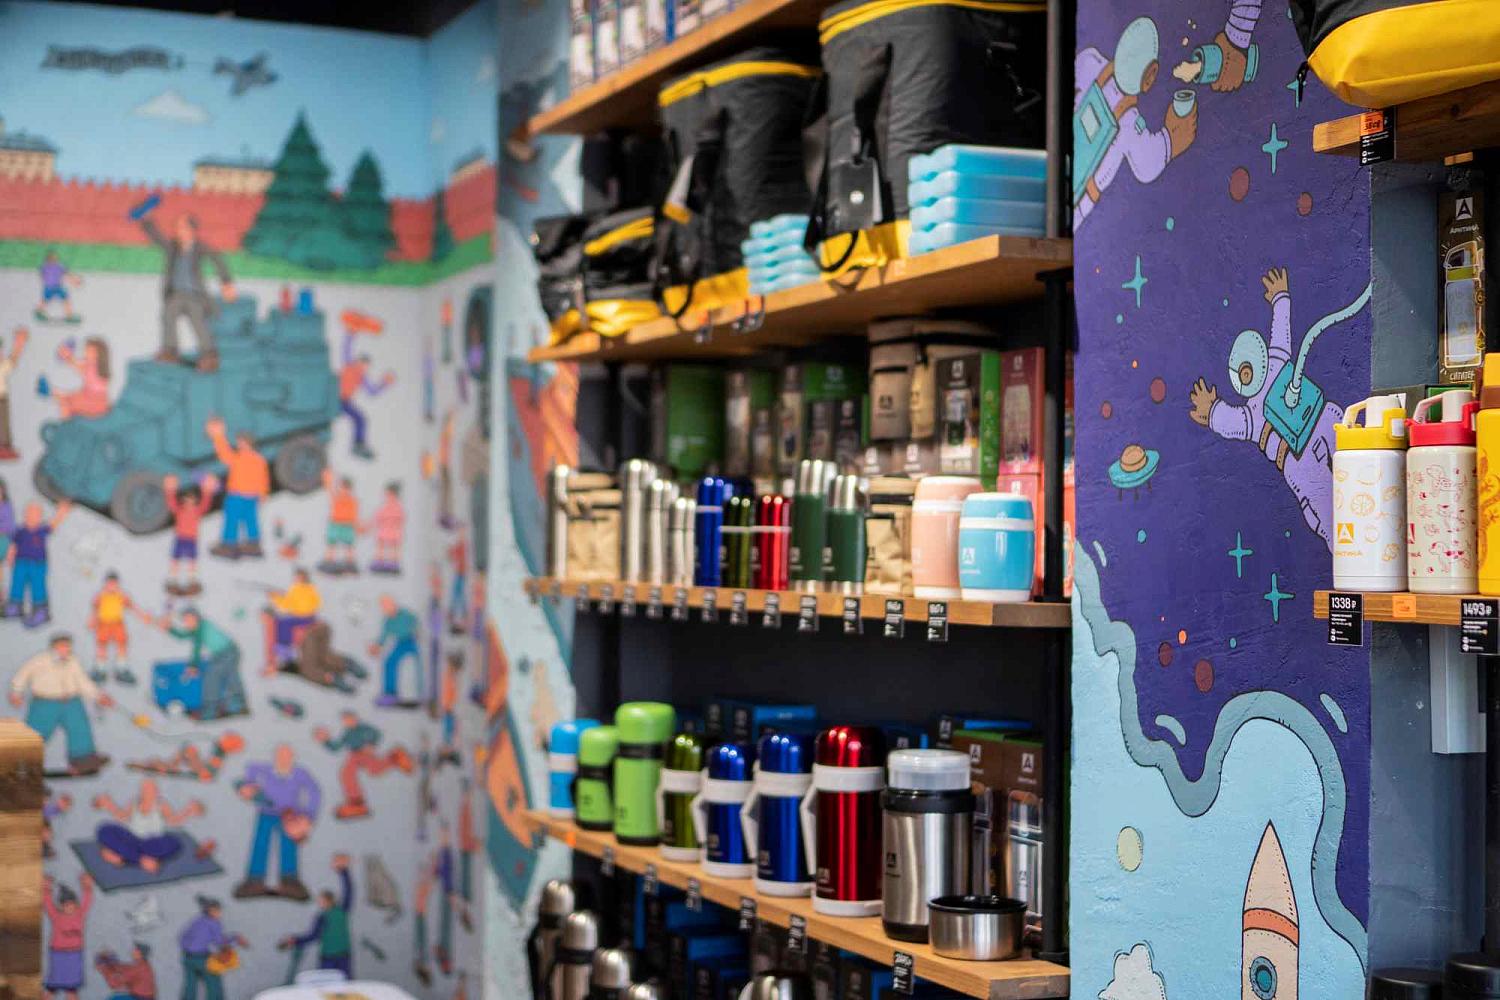 В магазине «Арктики» на Арбате посетителей ждал сюрприз: расписанные стены с миниатюрами. Стиль художника Алексея Шумова – комический жанр с множественными мелкими деталями.